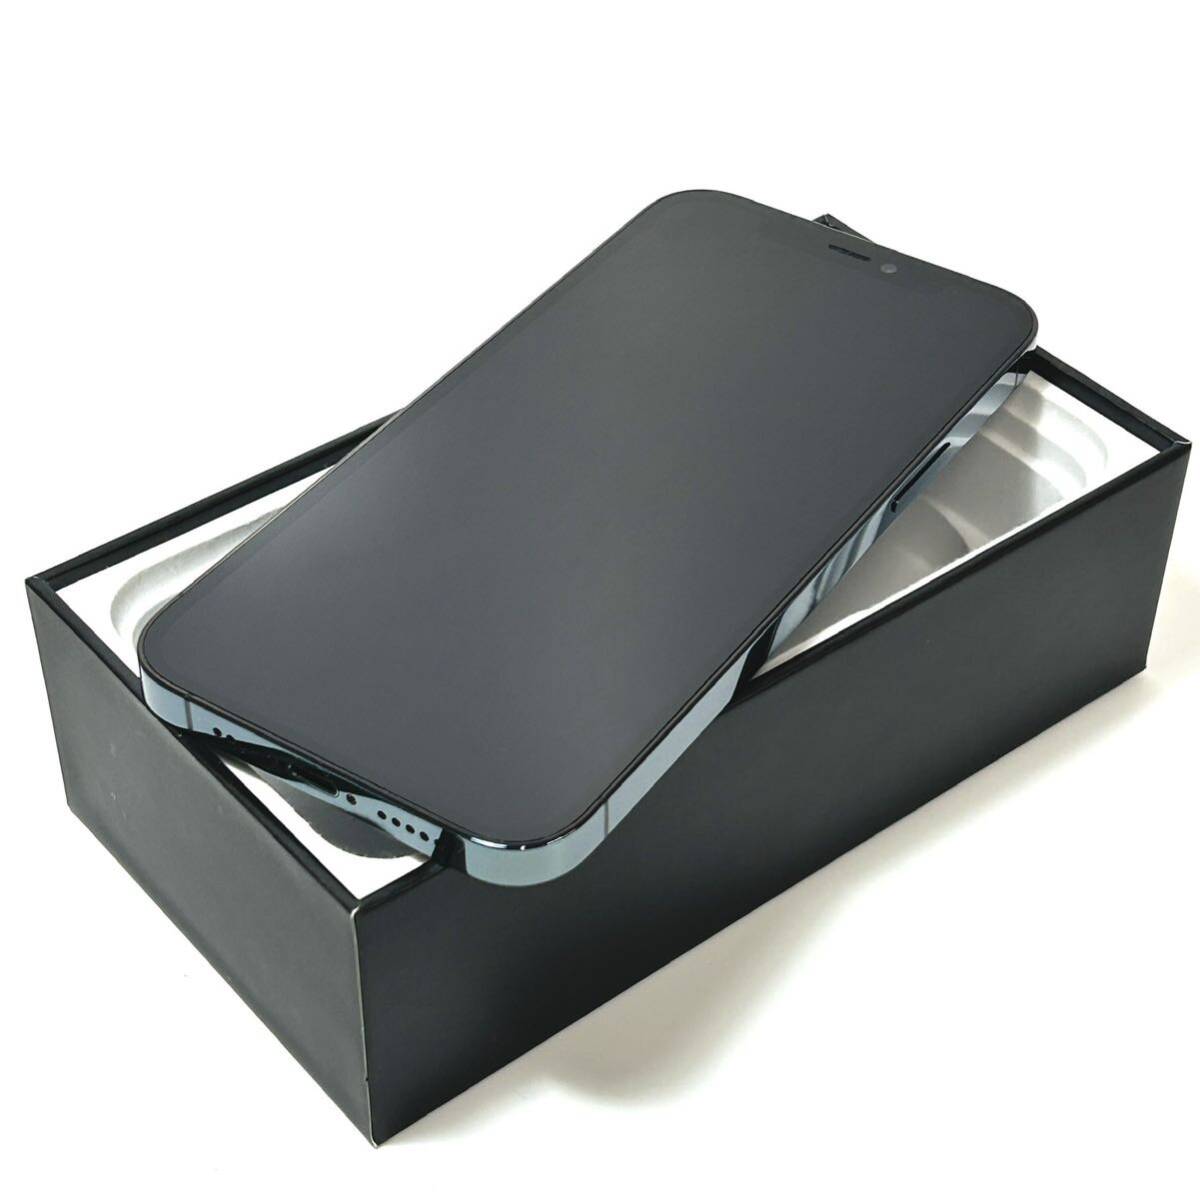 [ очень красивый товар ]AppleliPhone 12 Pro 128GBlSIM свободный l максимальный аккумулятор емкость 90%l Pacific голубой l рабочее состояние подтверждено l срочная доставка отправка возможно 